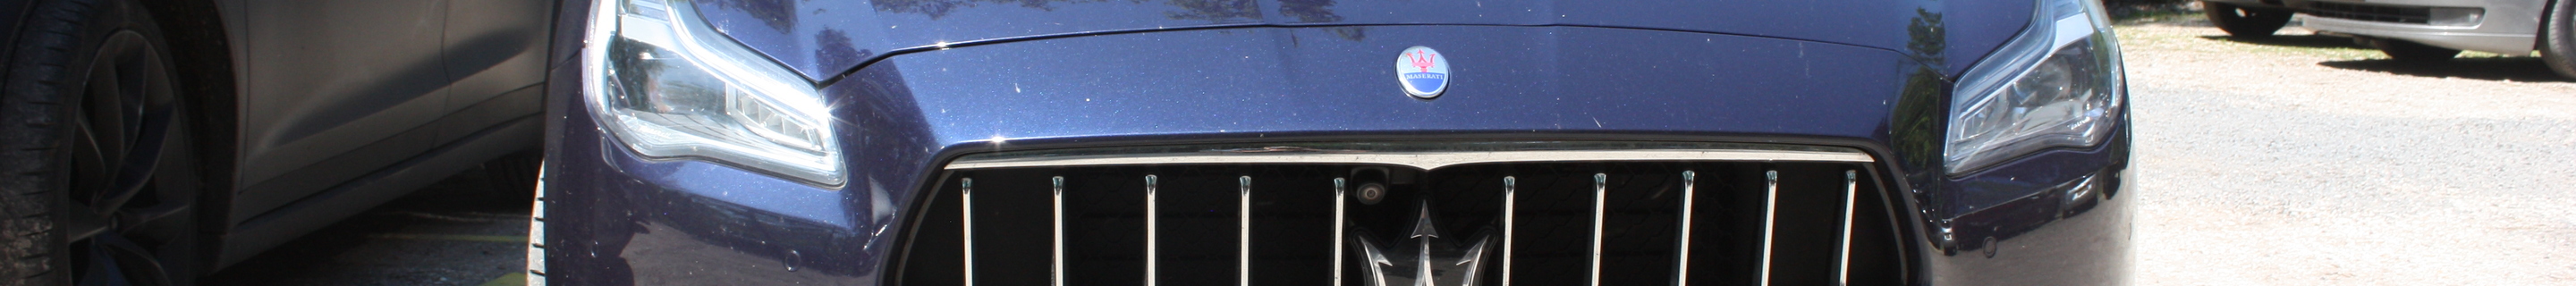 Maserati Quattroporte Diesel GranLusso 2018